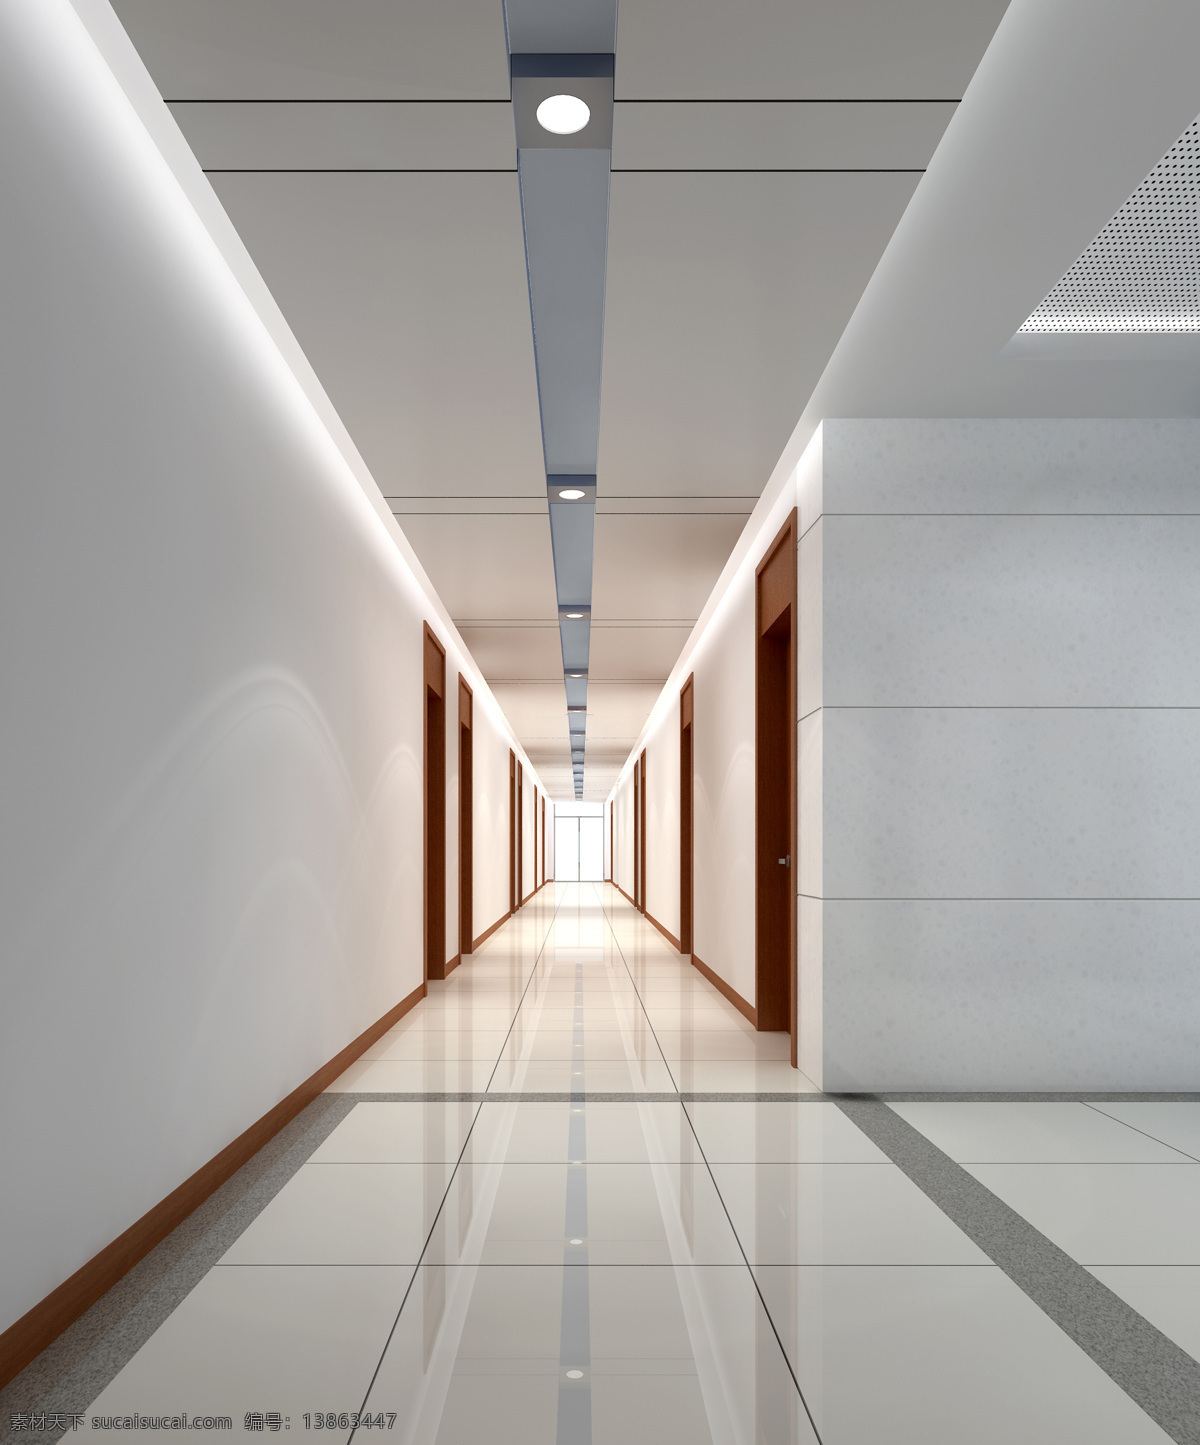 走道 办公楼 公共区 公共区域 走廊 连廊 办公设计 室内设计 环境设计